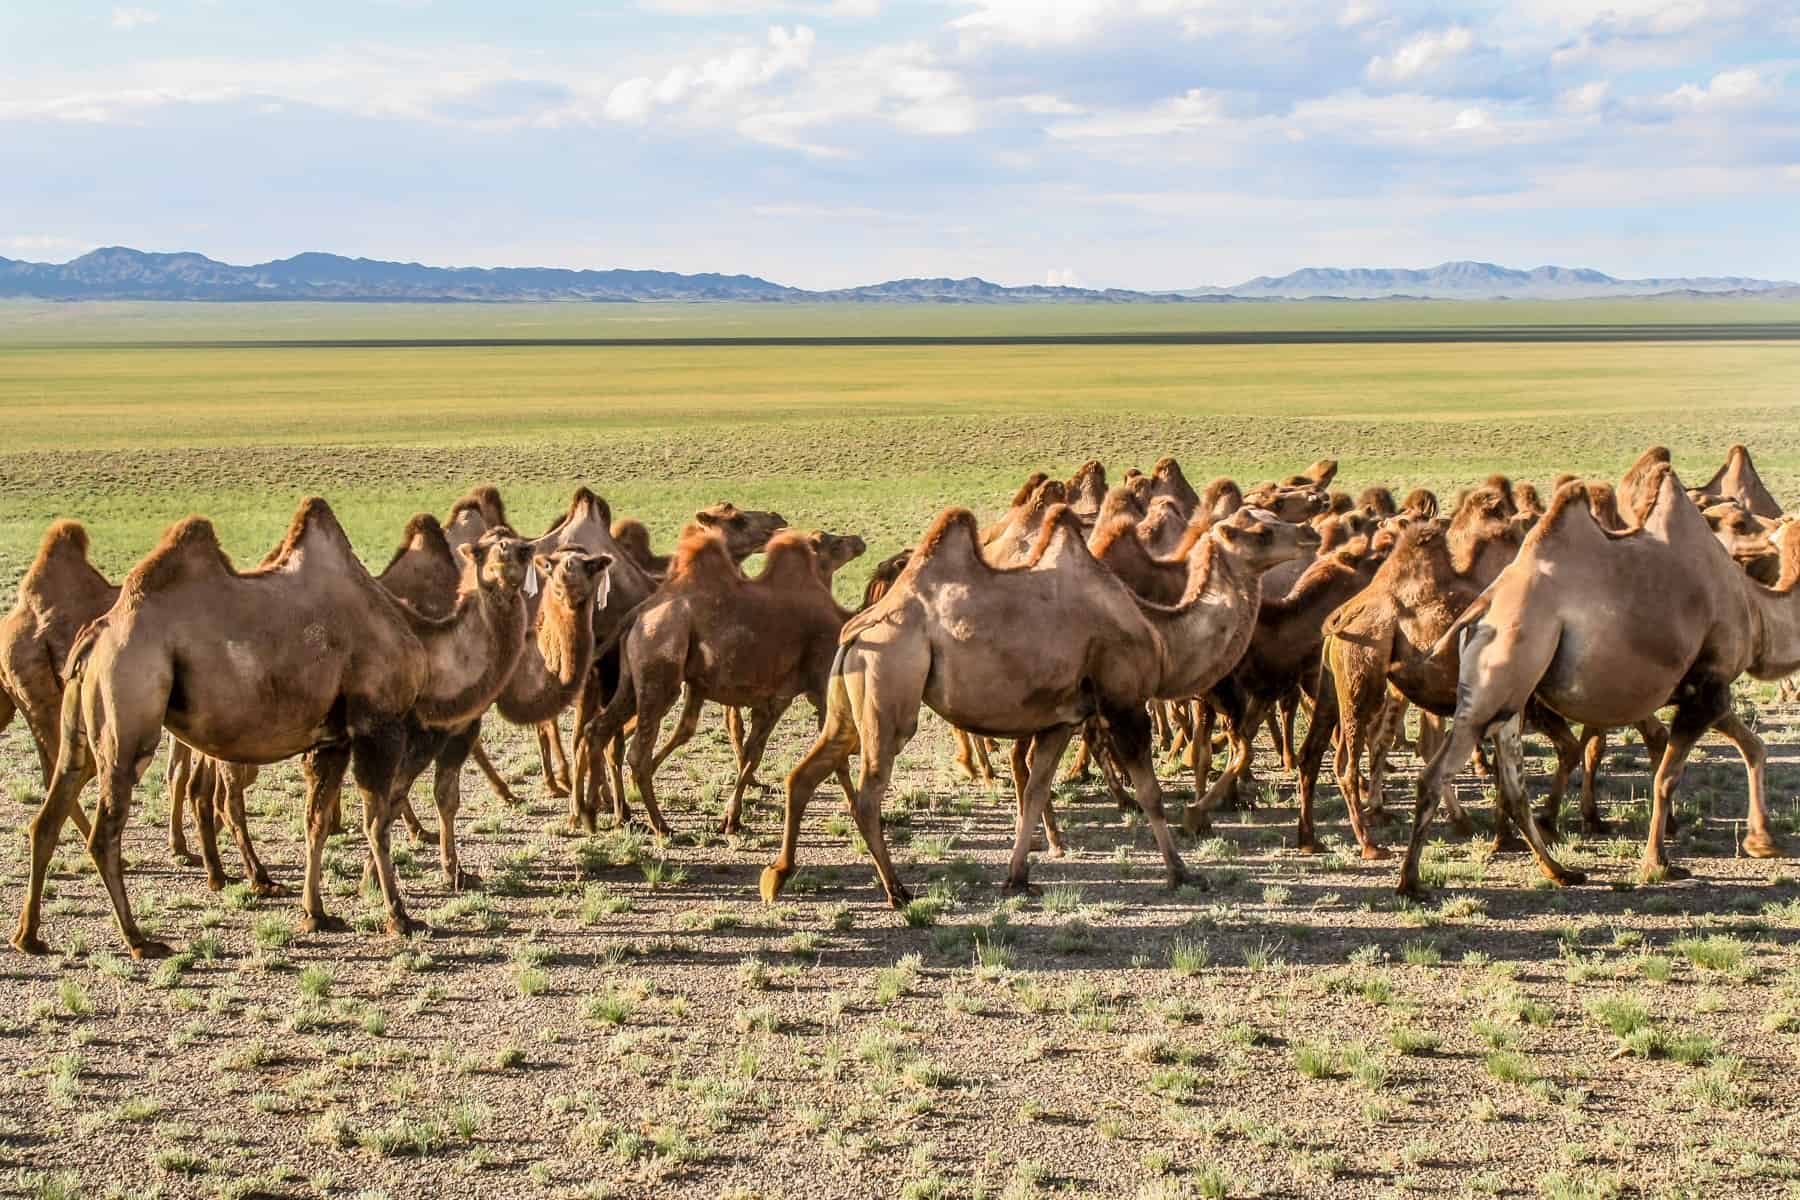 A horde of camels roaming in the Gobi Desert of Mongolia